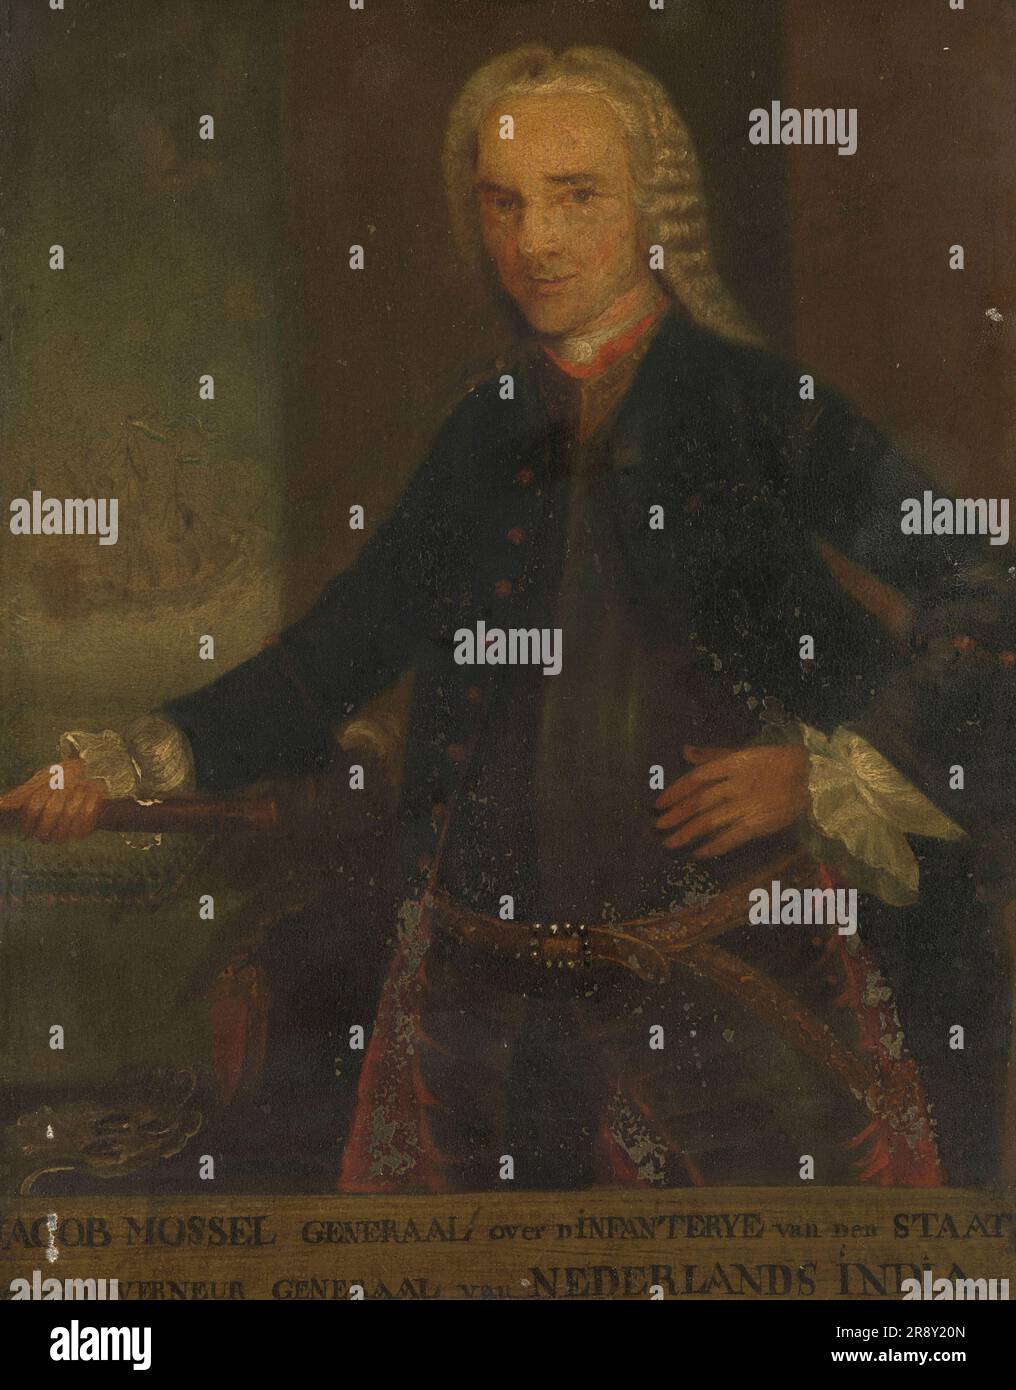 Portrait de Jacob Mossel, gouverneur général de la Dutch East India Company, 1750-1799. Banque D'Images